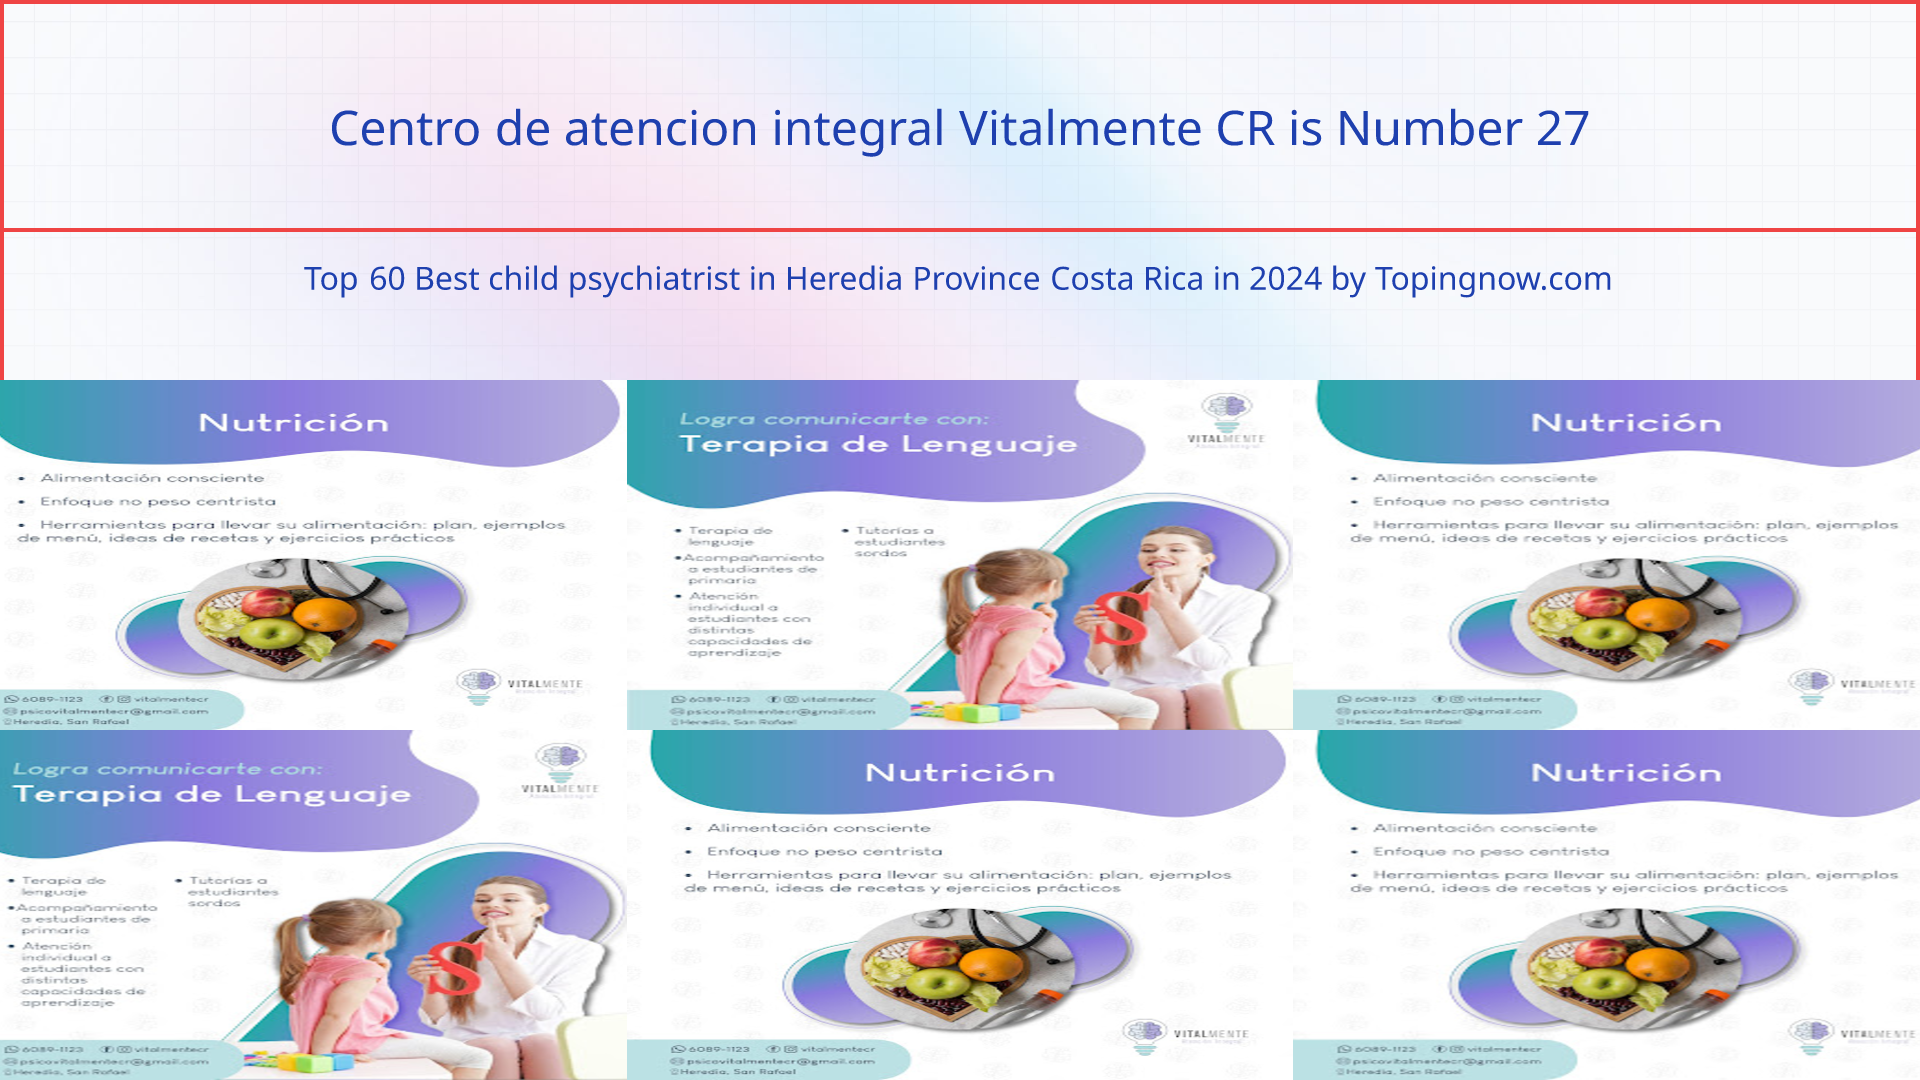 Centro de atencion integral Vitalmente CR: Top 60 Best child psychiatrist in Heredia Province Costa Rica in 2024